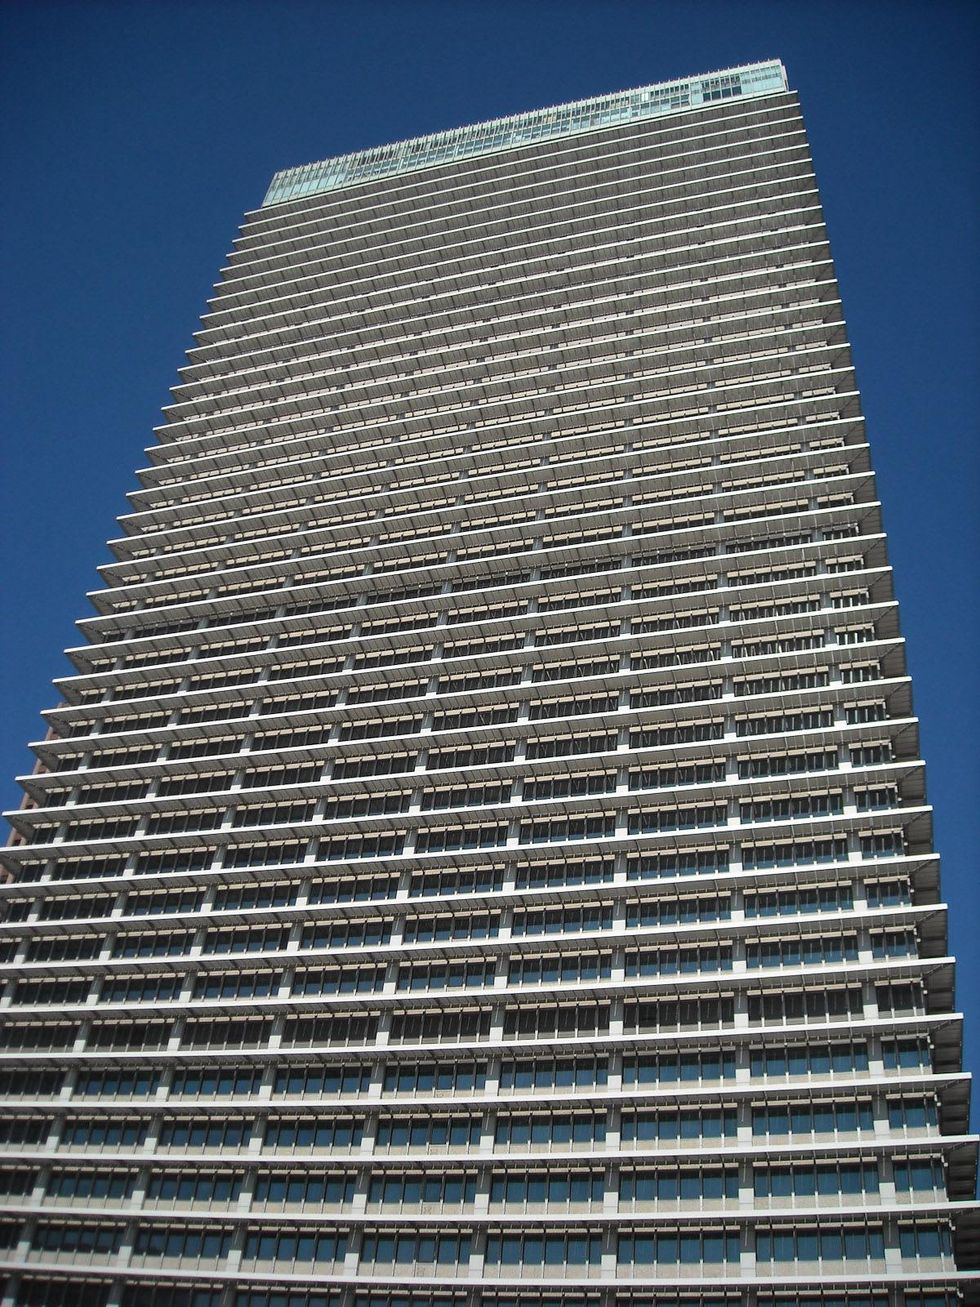 7, Exxon Mobil building, 800 Bell, October 2012